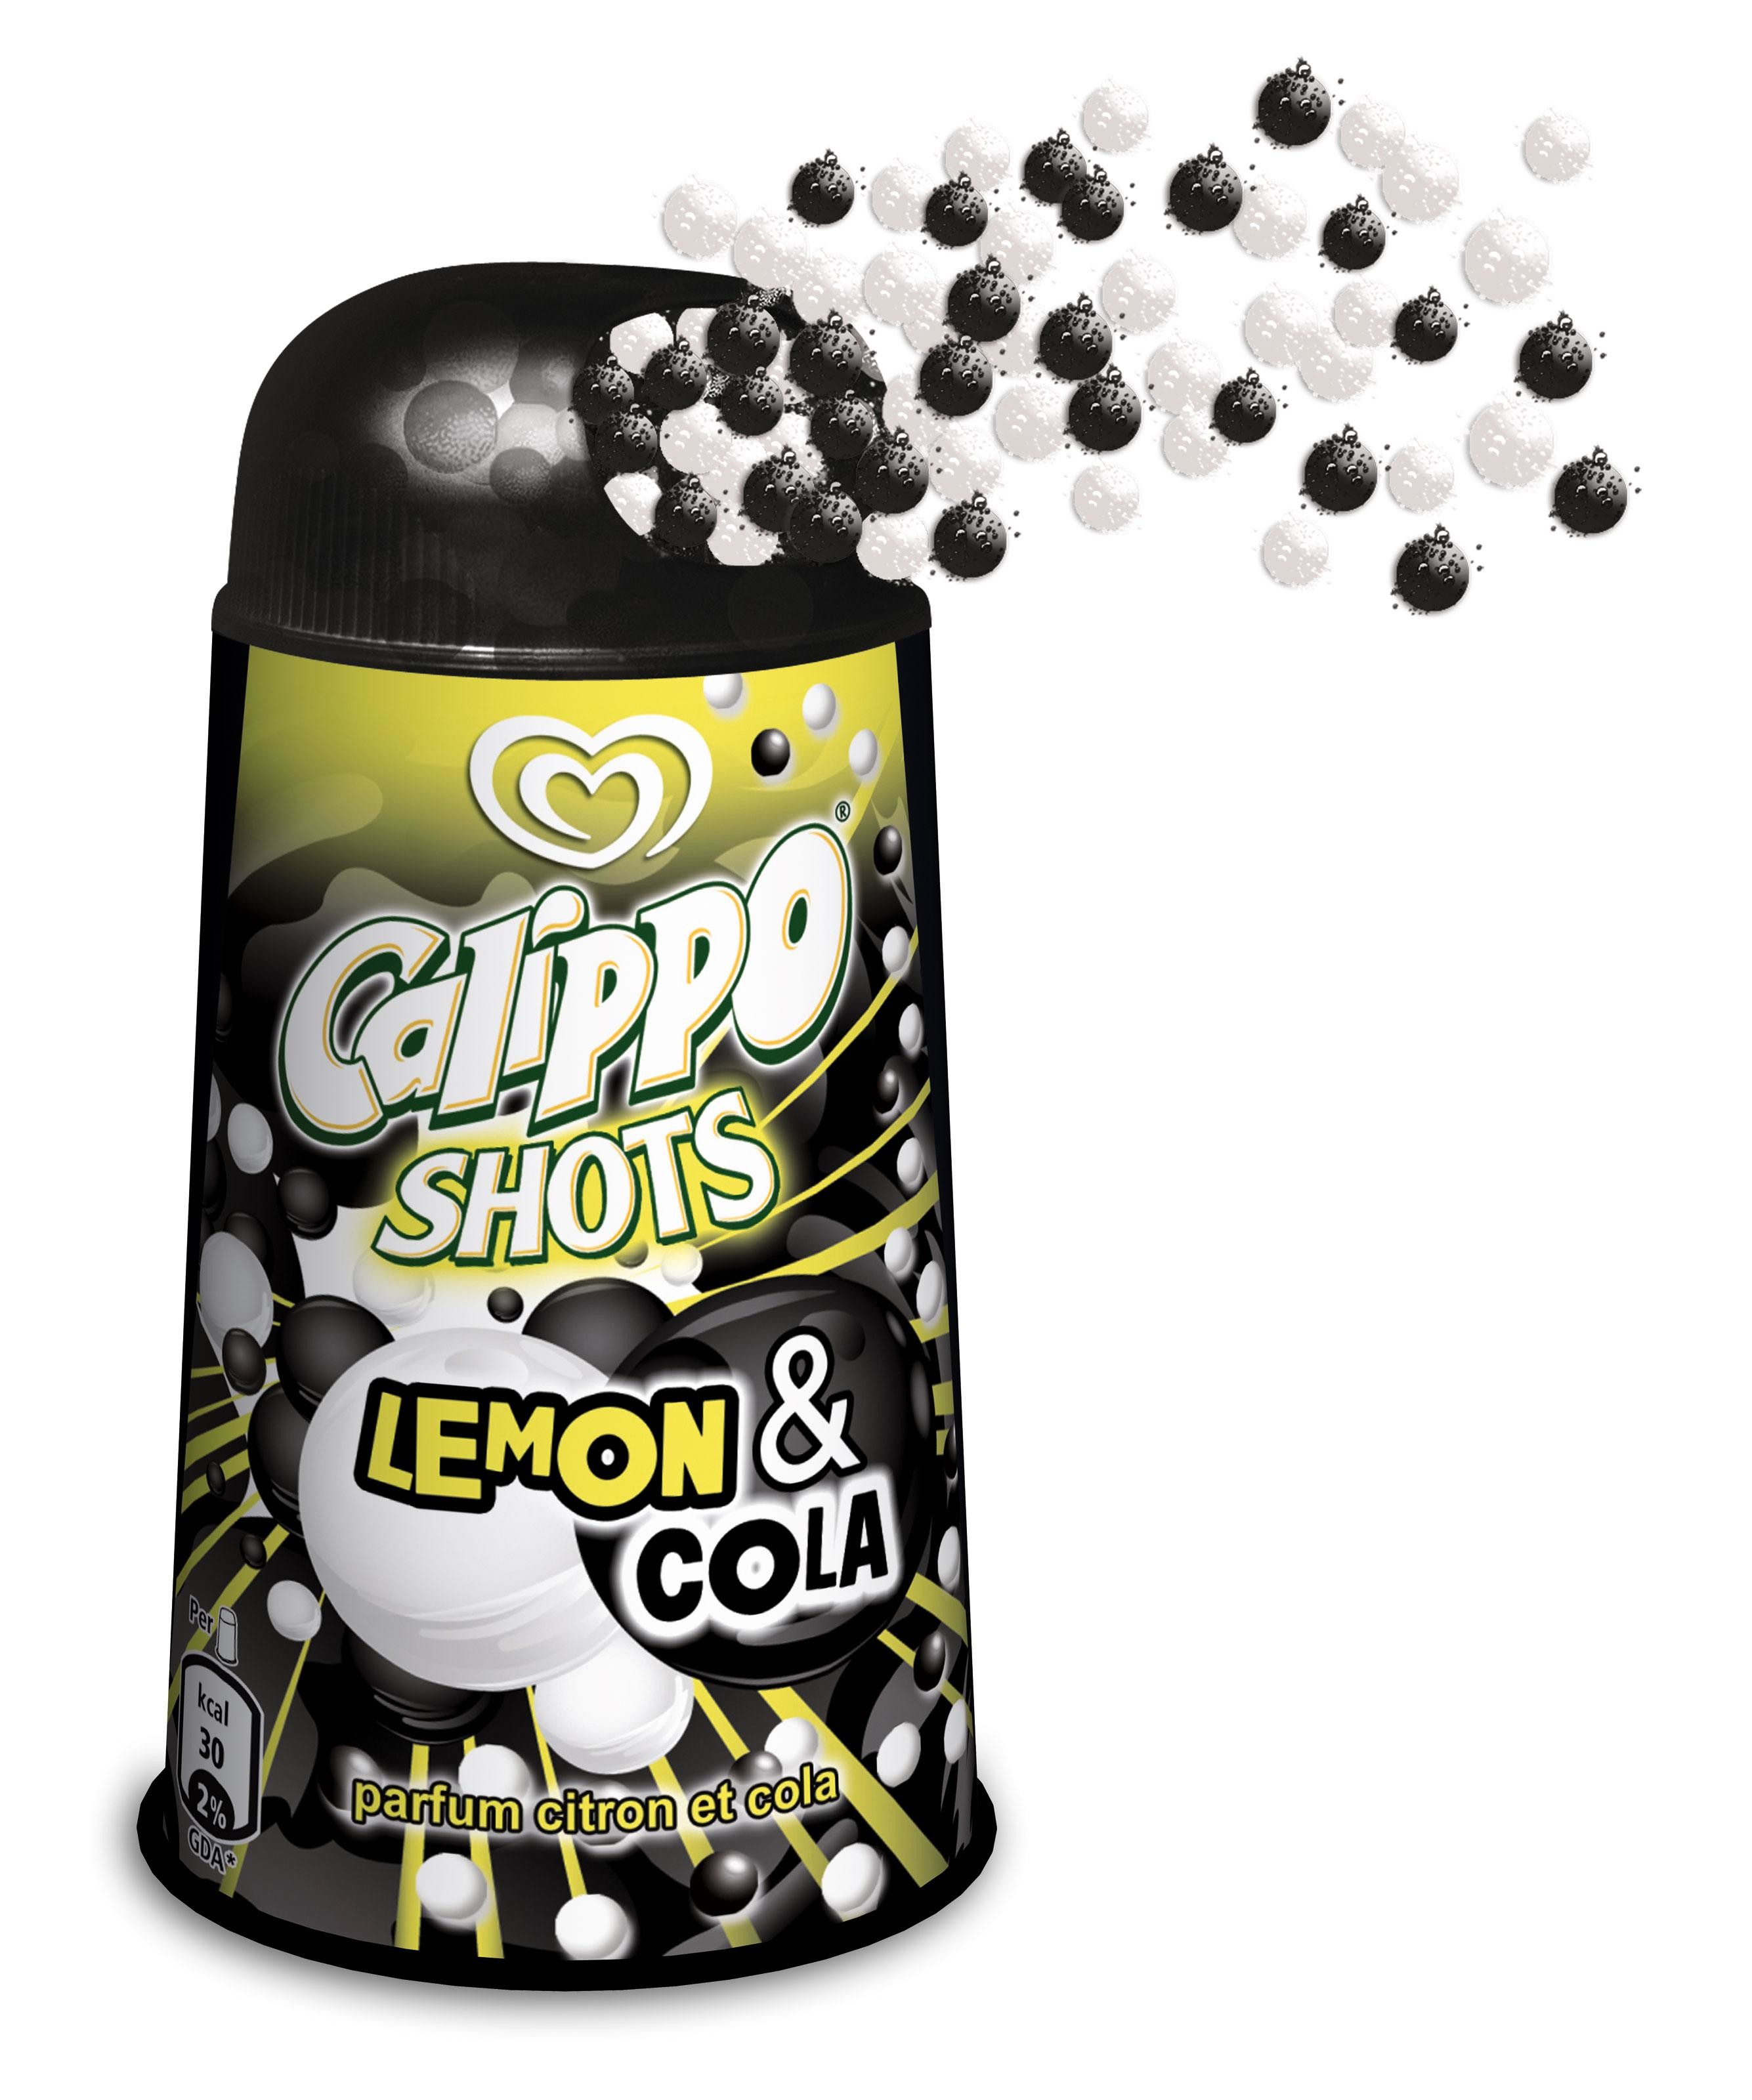 Woedend meerderheid lineair Ola Calippo Shots Cola & Lemon - Nevejan